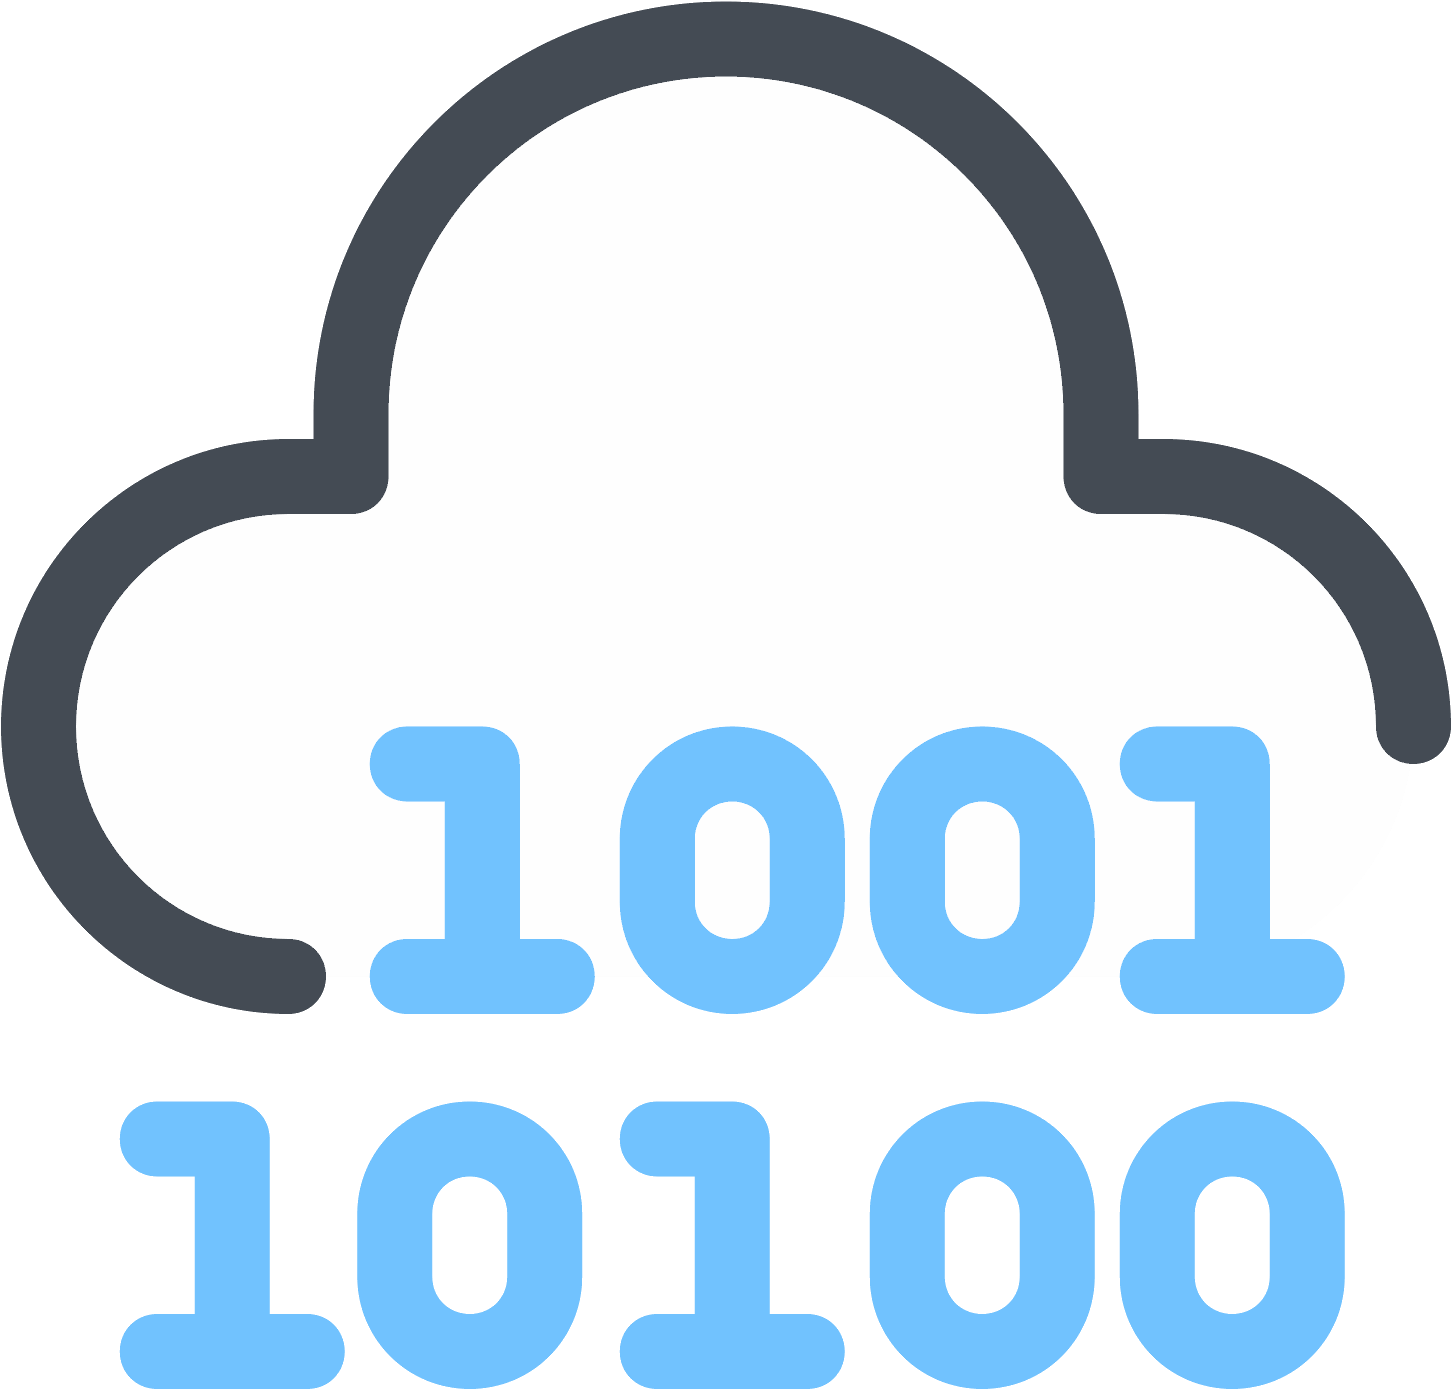 Cloud Binary Code Icon - Cloud Computing (1600x1600)